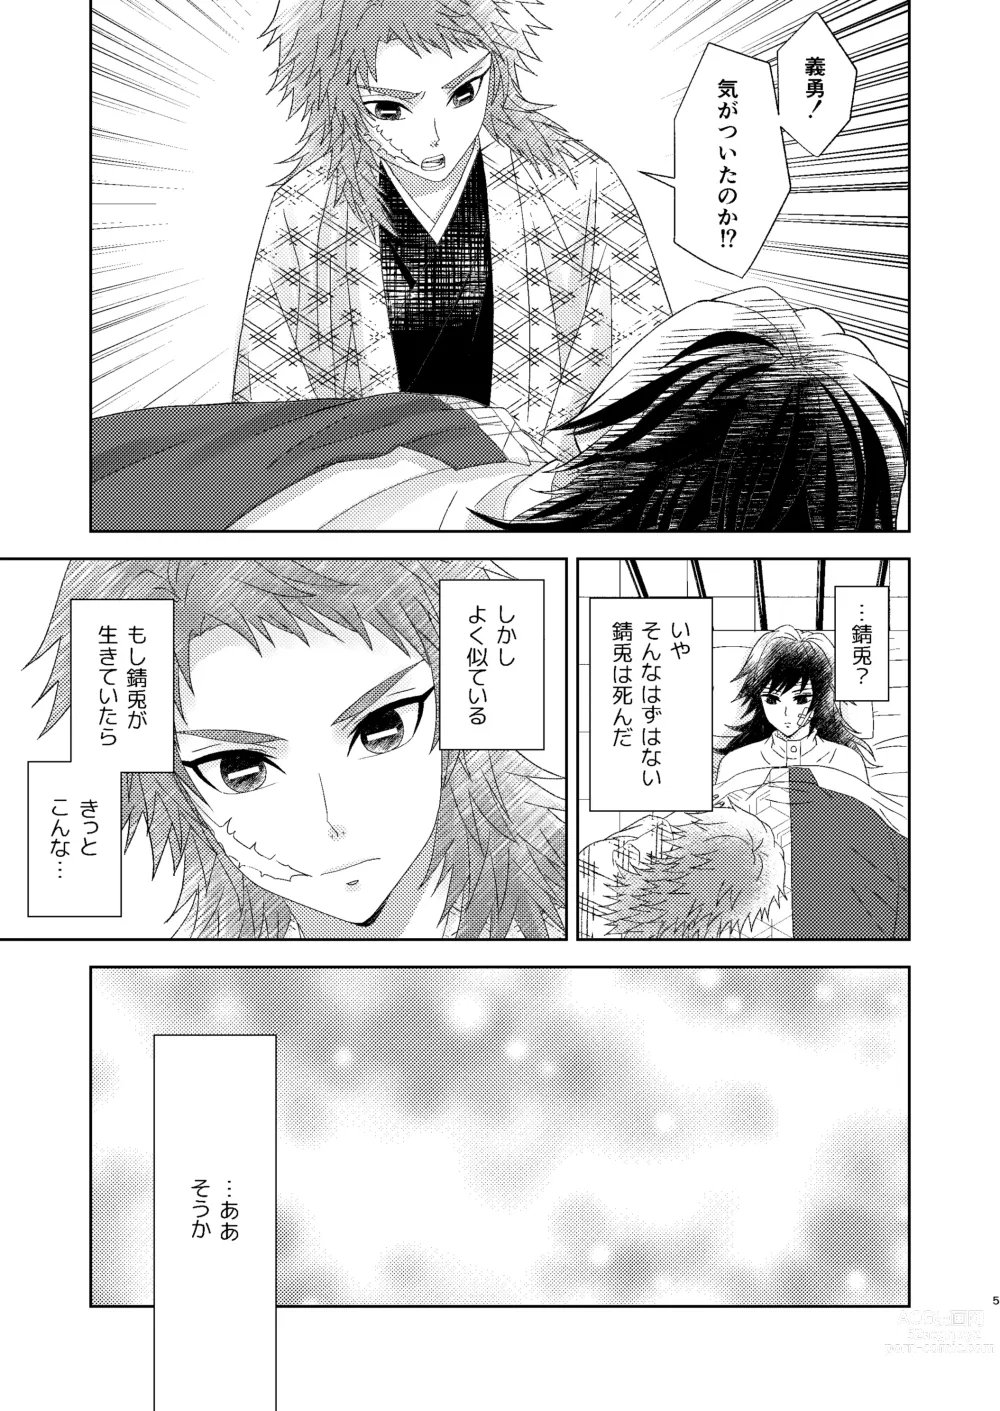 Page 4 of doujinshi Yuurei Kareshi no Koiwazurai